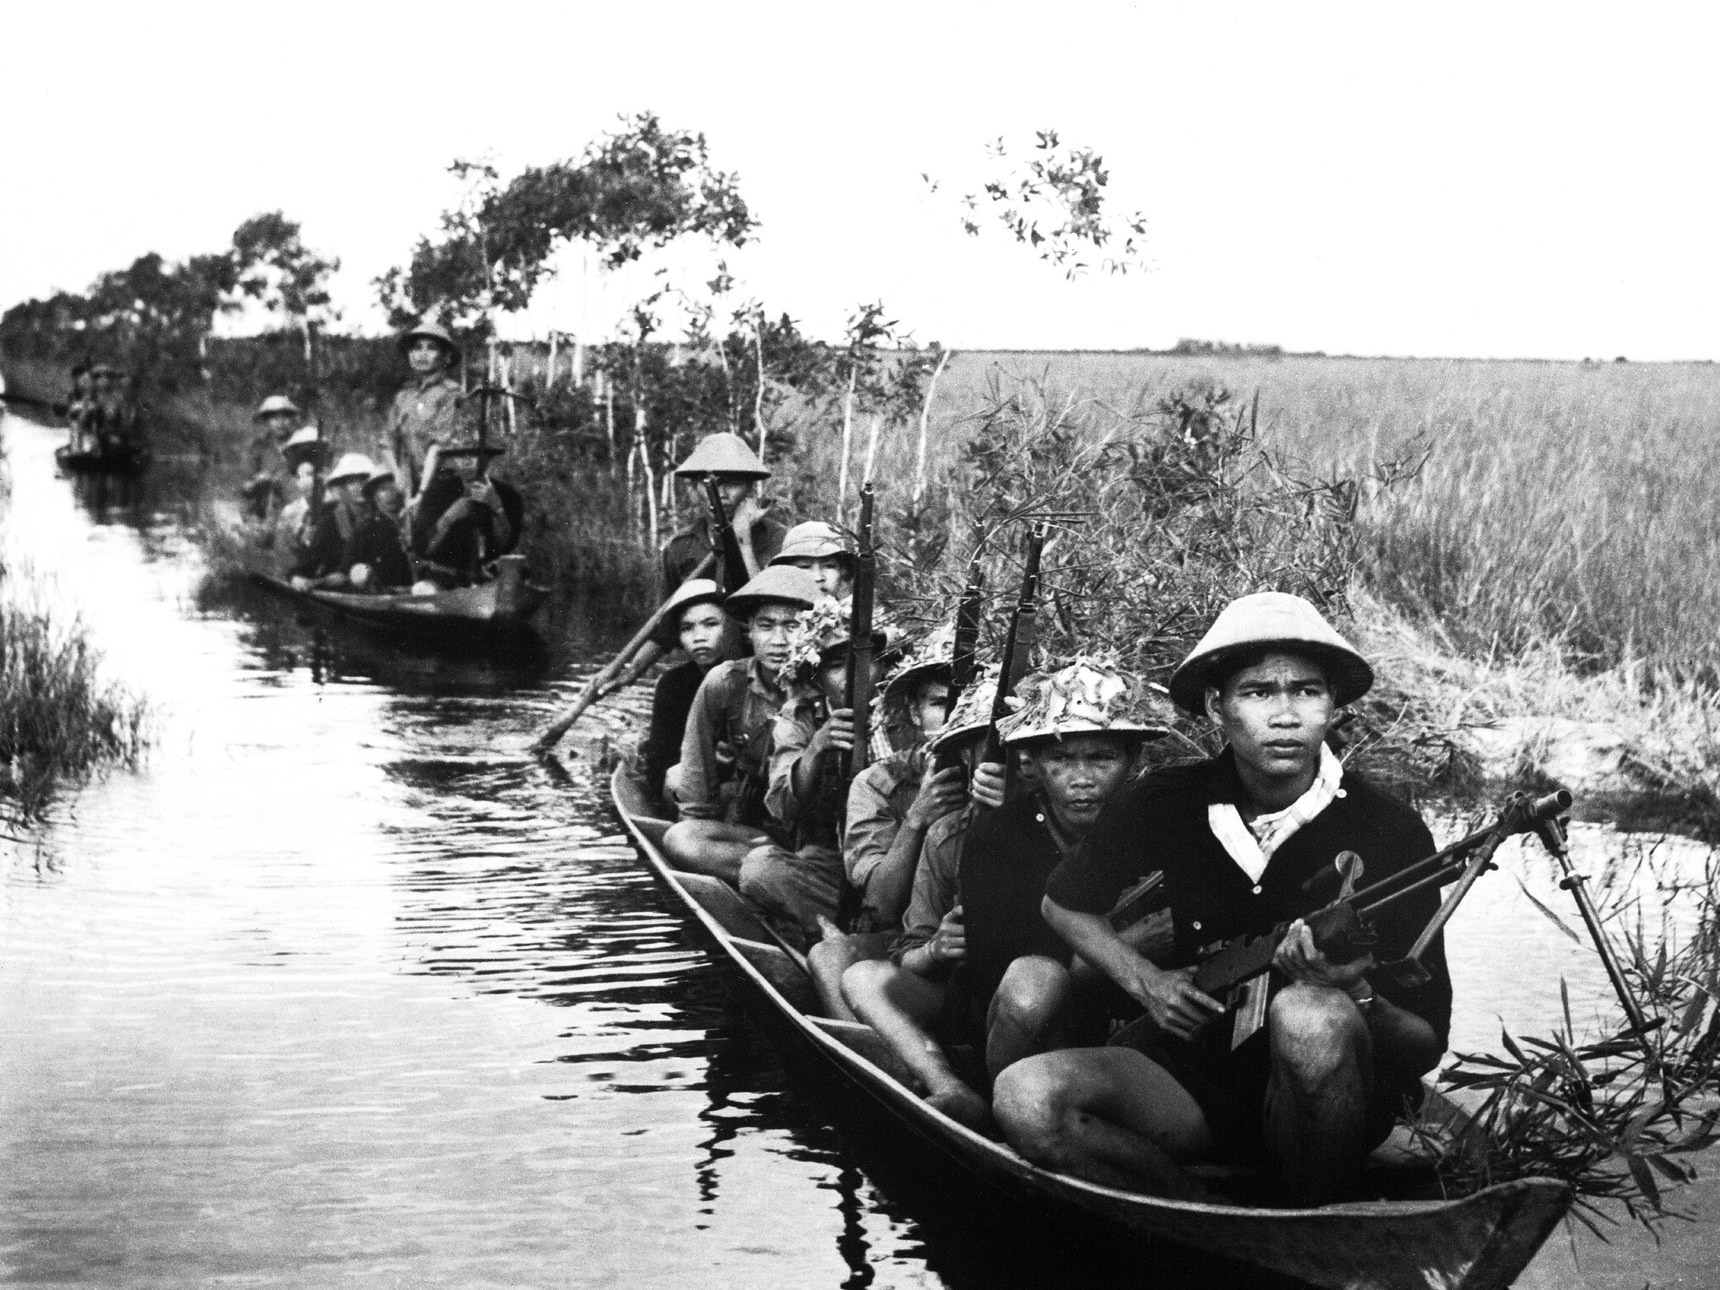 Guerrilheiros do grupo Viet Cong durante o conflito (Foto: Wikimedia Commons)